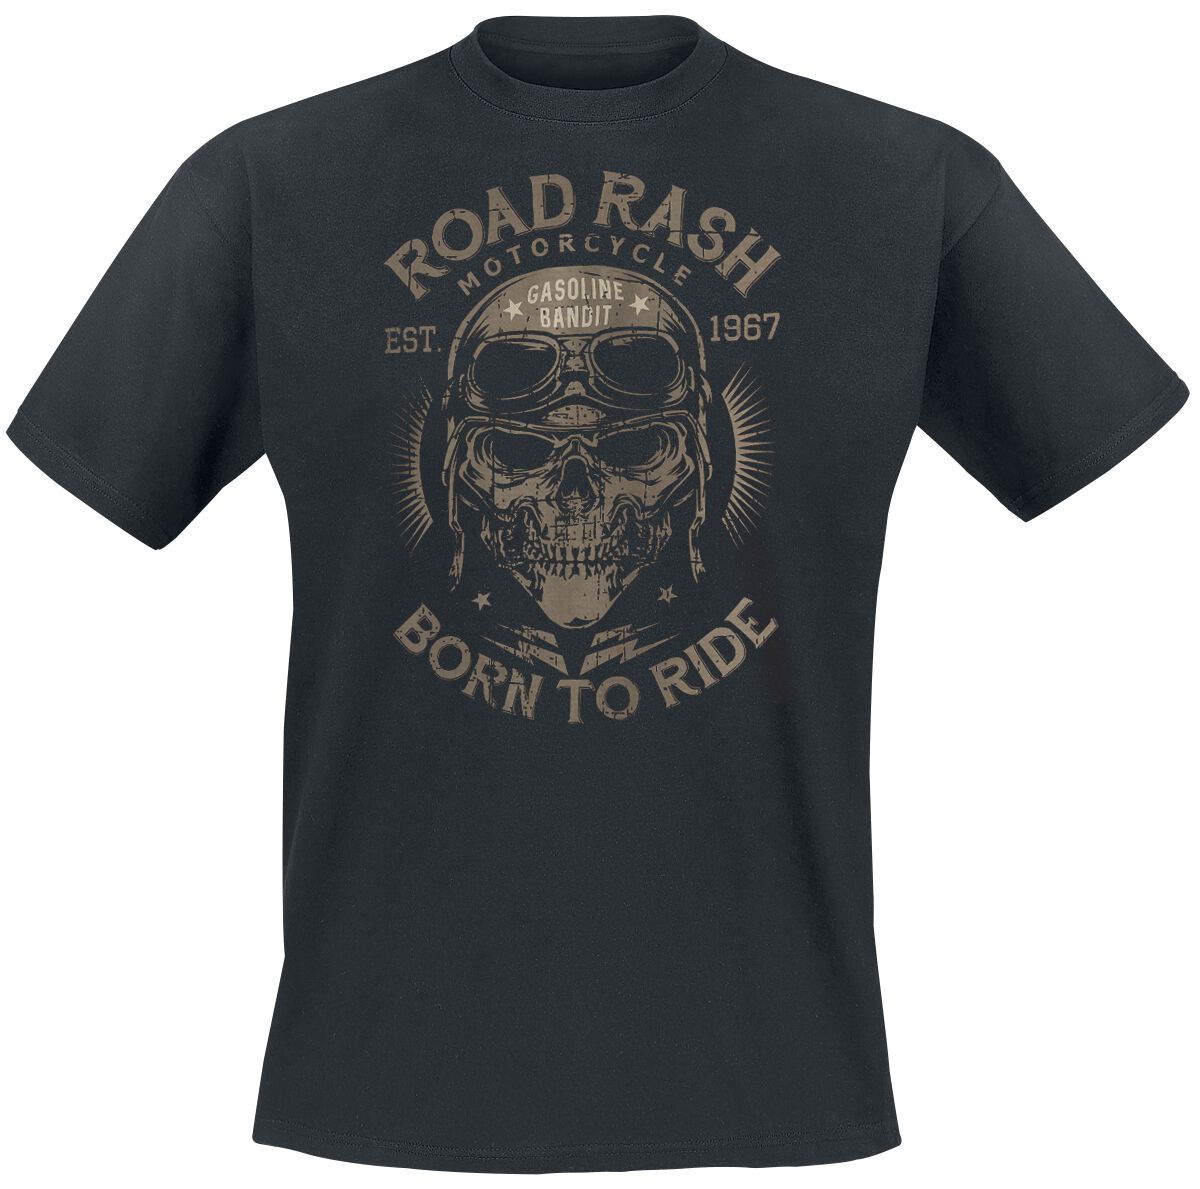 Gasoline Bandit Road Rash T-Shirt black